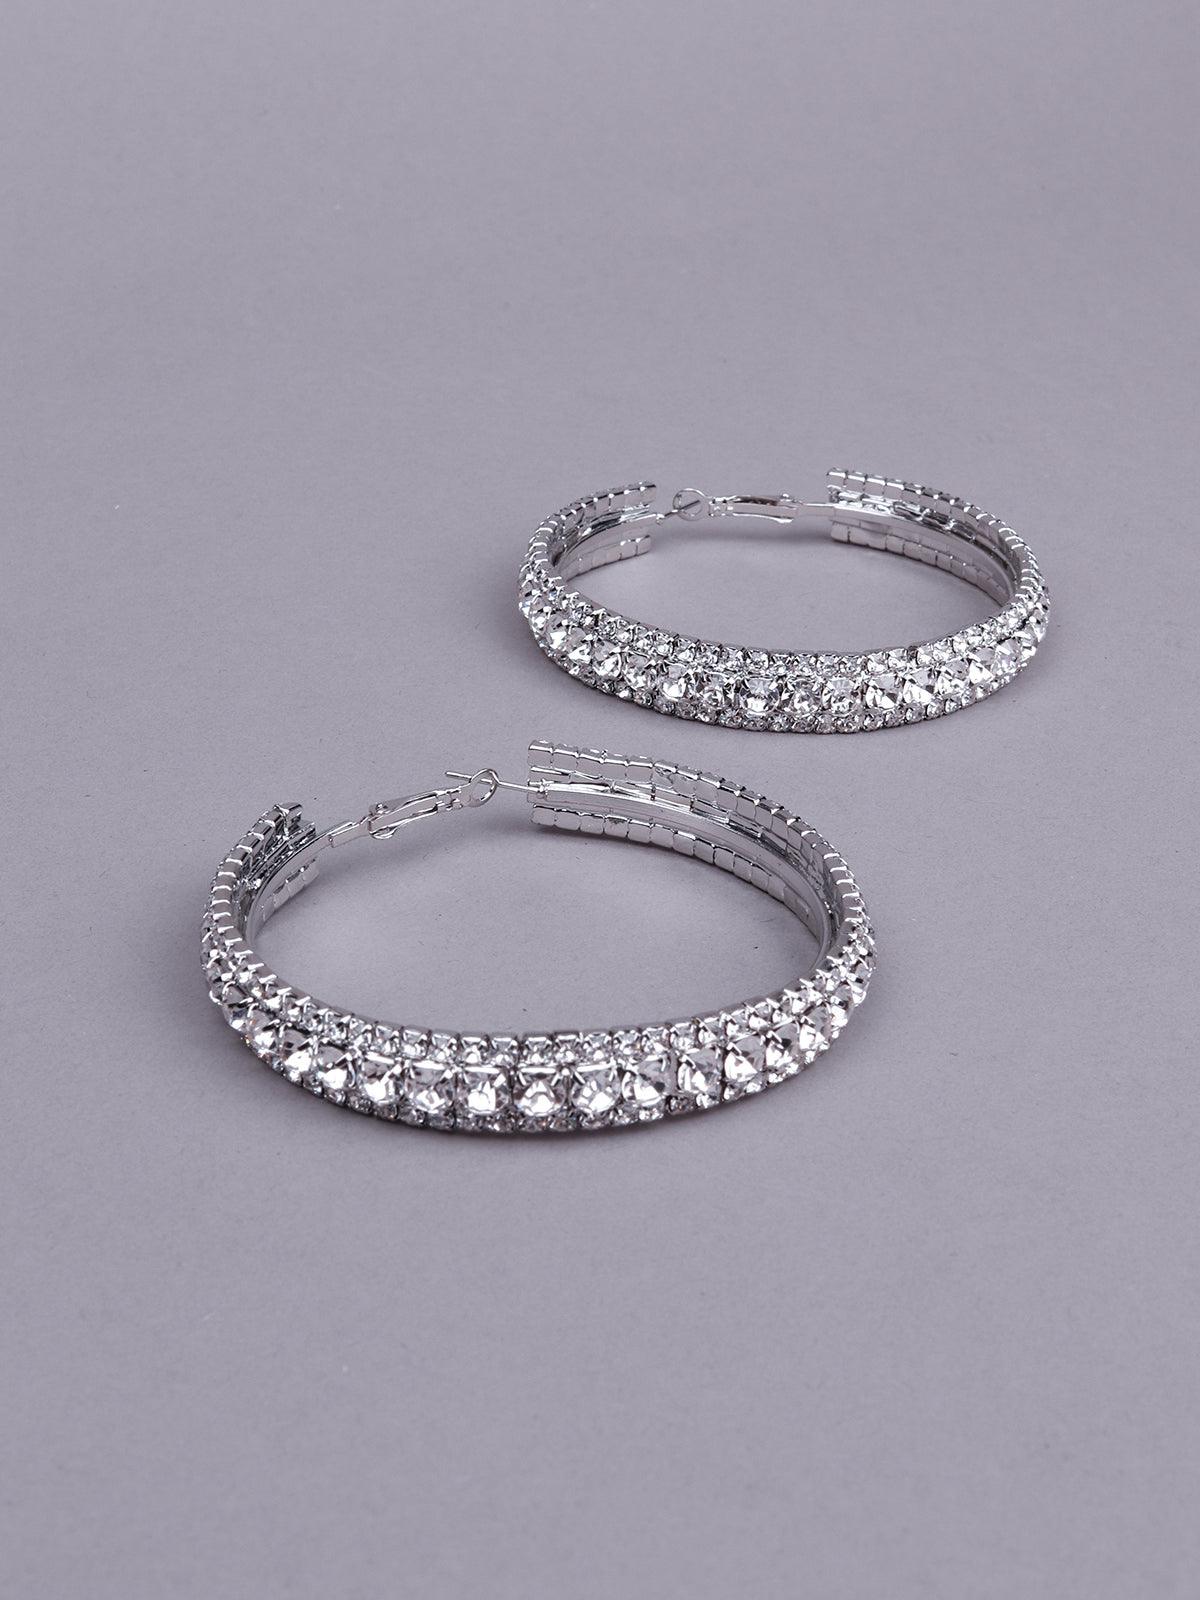 Women's Silver Tone Studded Hoop Earrings - Odette